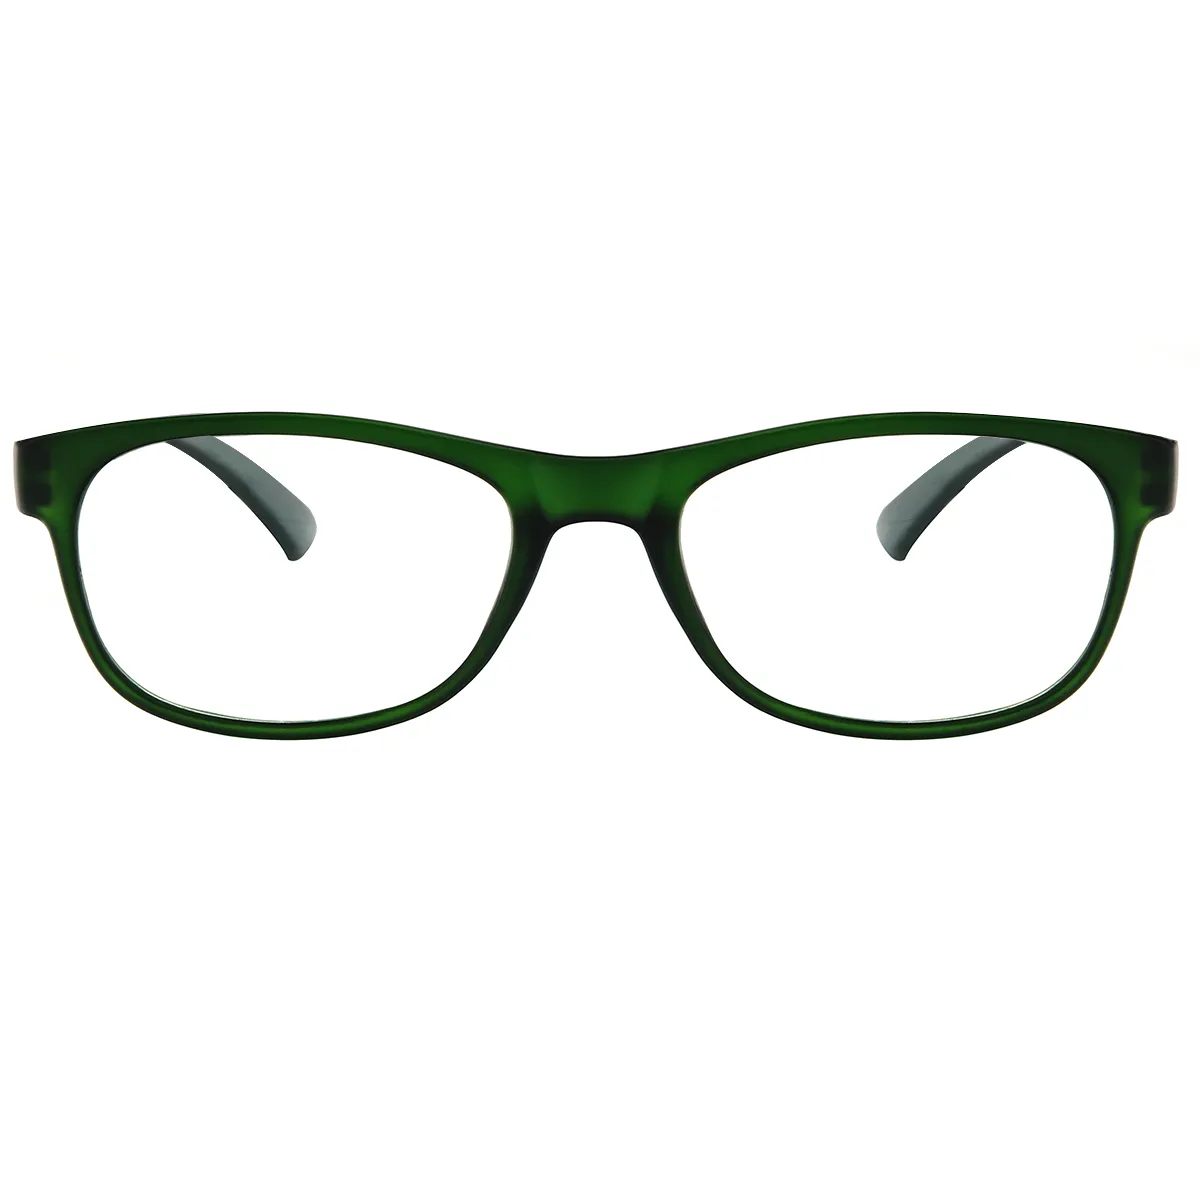 Classic Oval Green  Reading Glasses for Women & Men